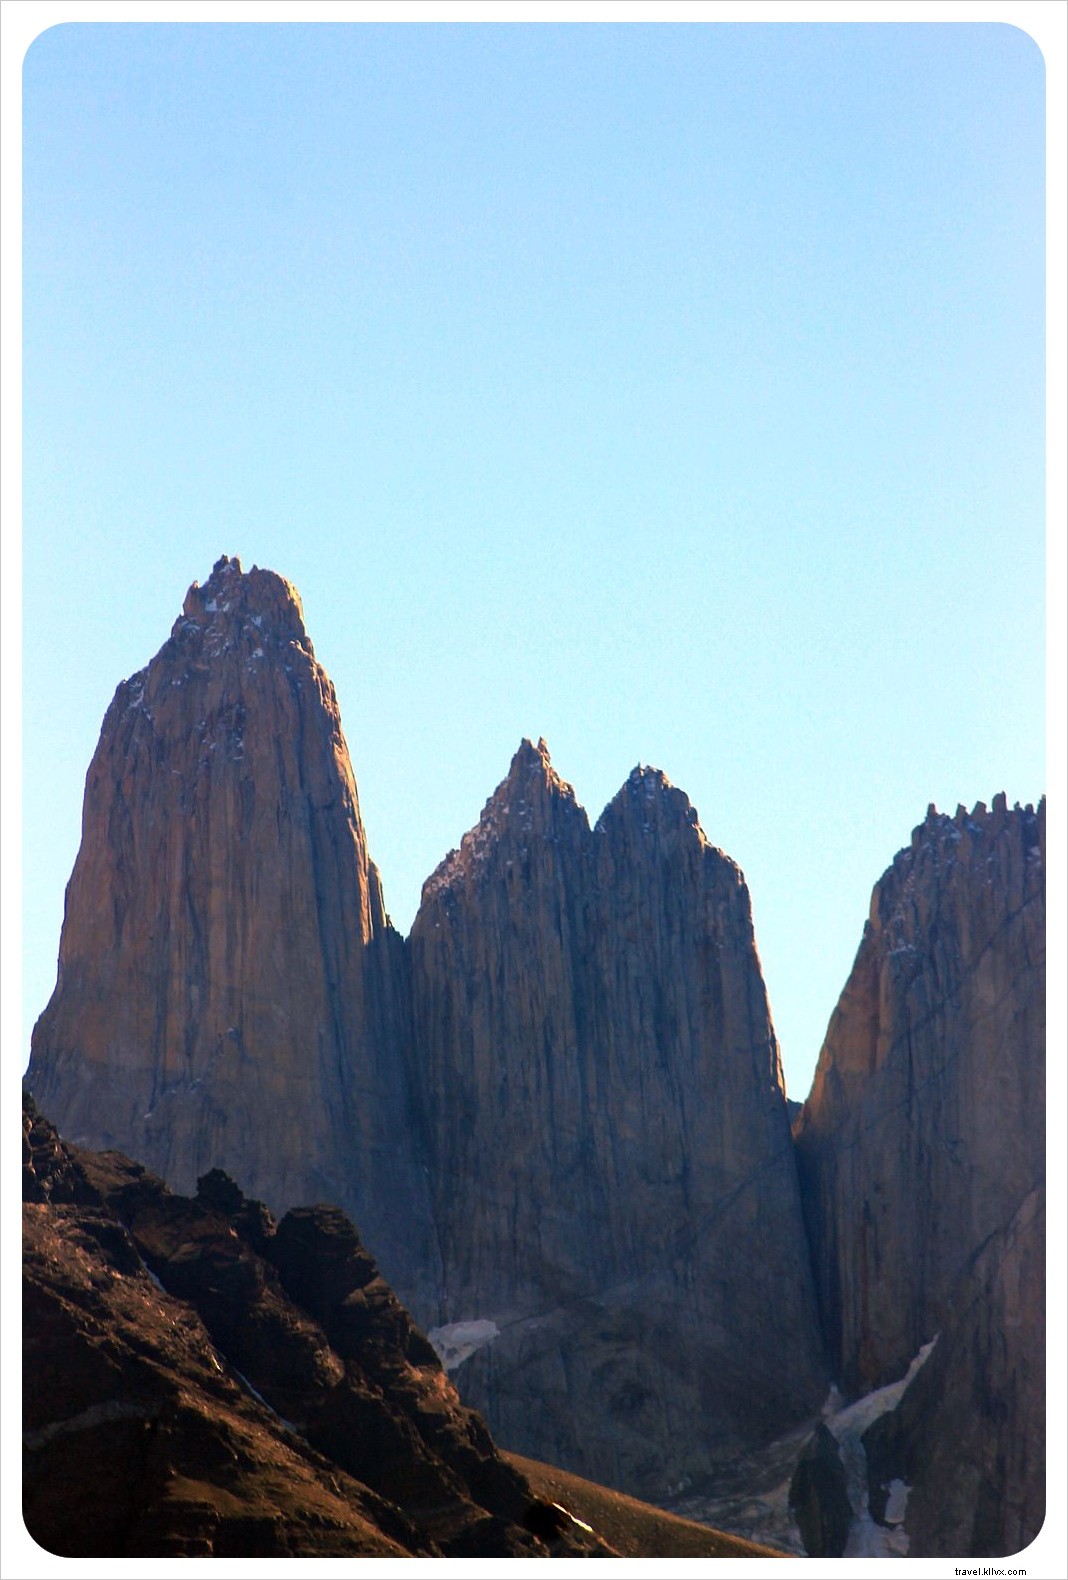 Torres del Paine:Jelajahi esensi Patagonia dalam sehari